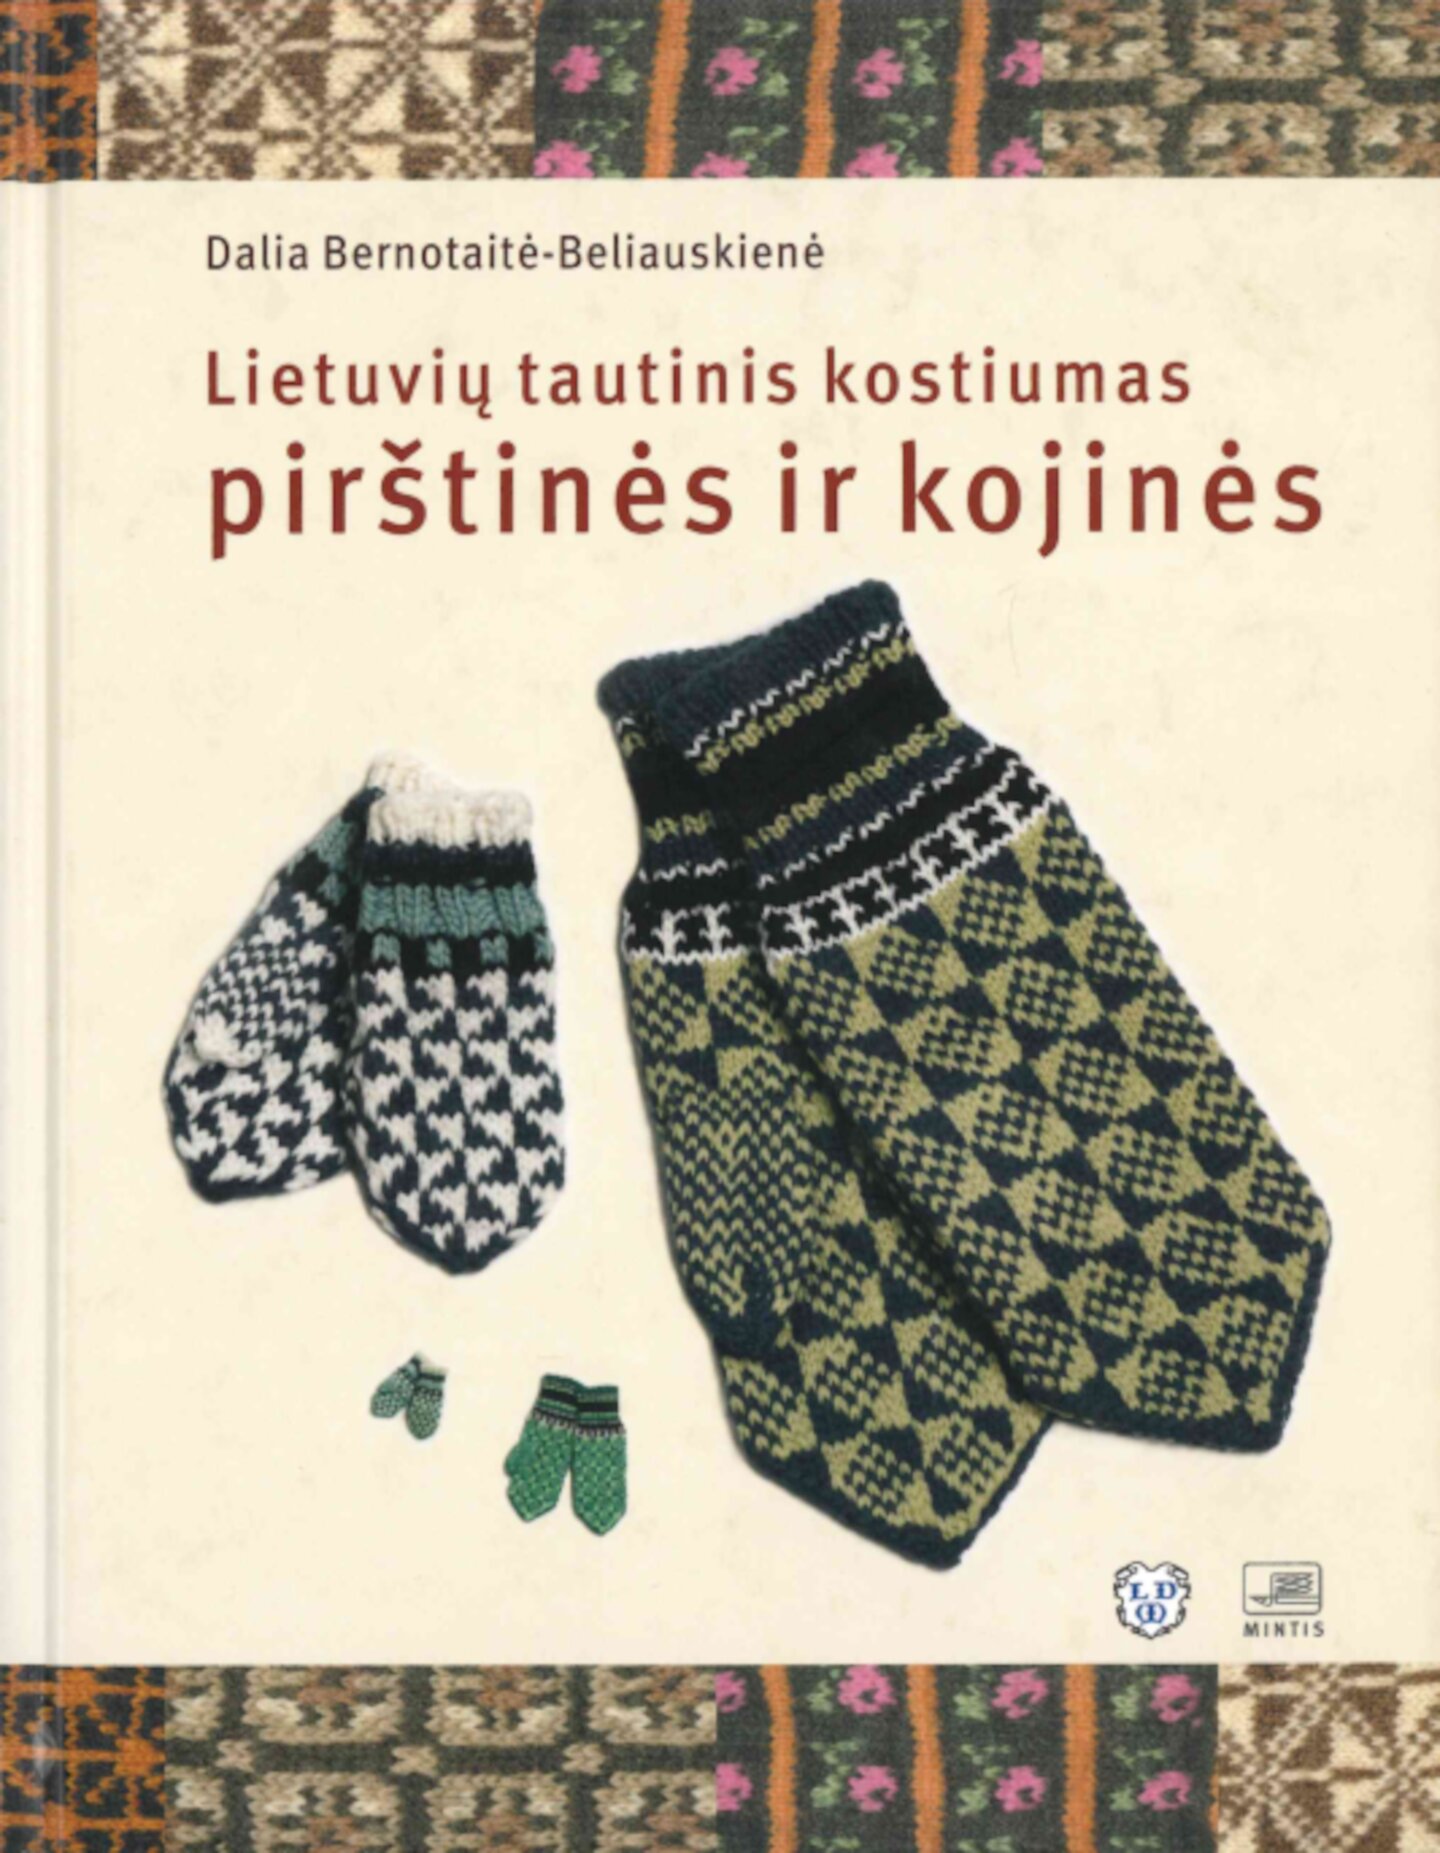 Lietuviu-tautinis-kostiumas-pirstines-ir-kojines